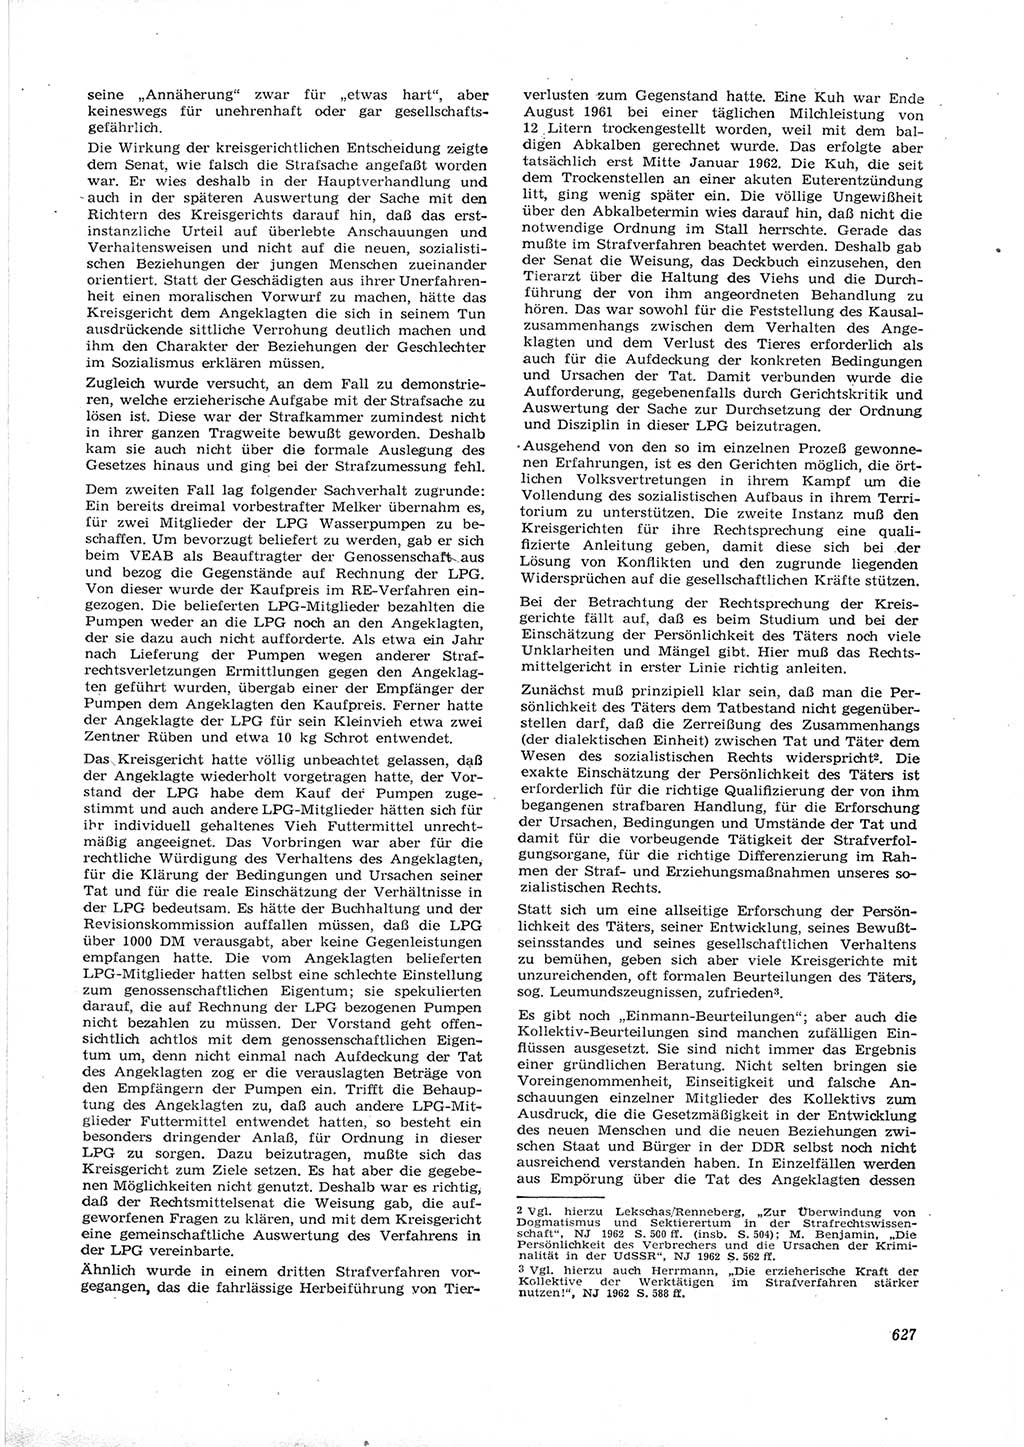 Neue Justiz (NJ), Zeitschrift für Recht und Rechtswissenschaft [Deutsche Demokratische Republik (DDR)], 16. Jahrgang 1962, Seite 627 (NJ DDR 1962, S. 627)